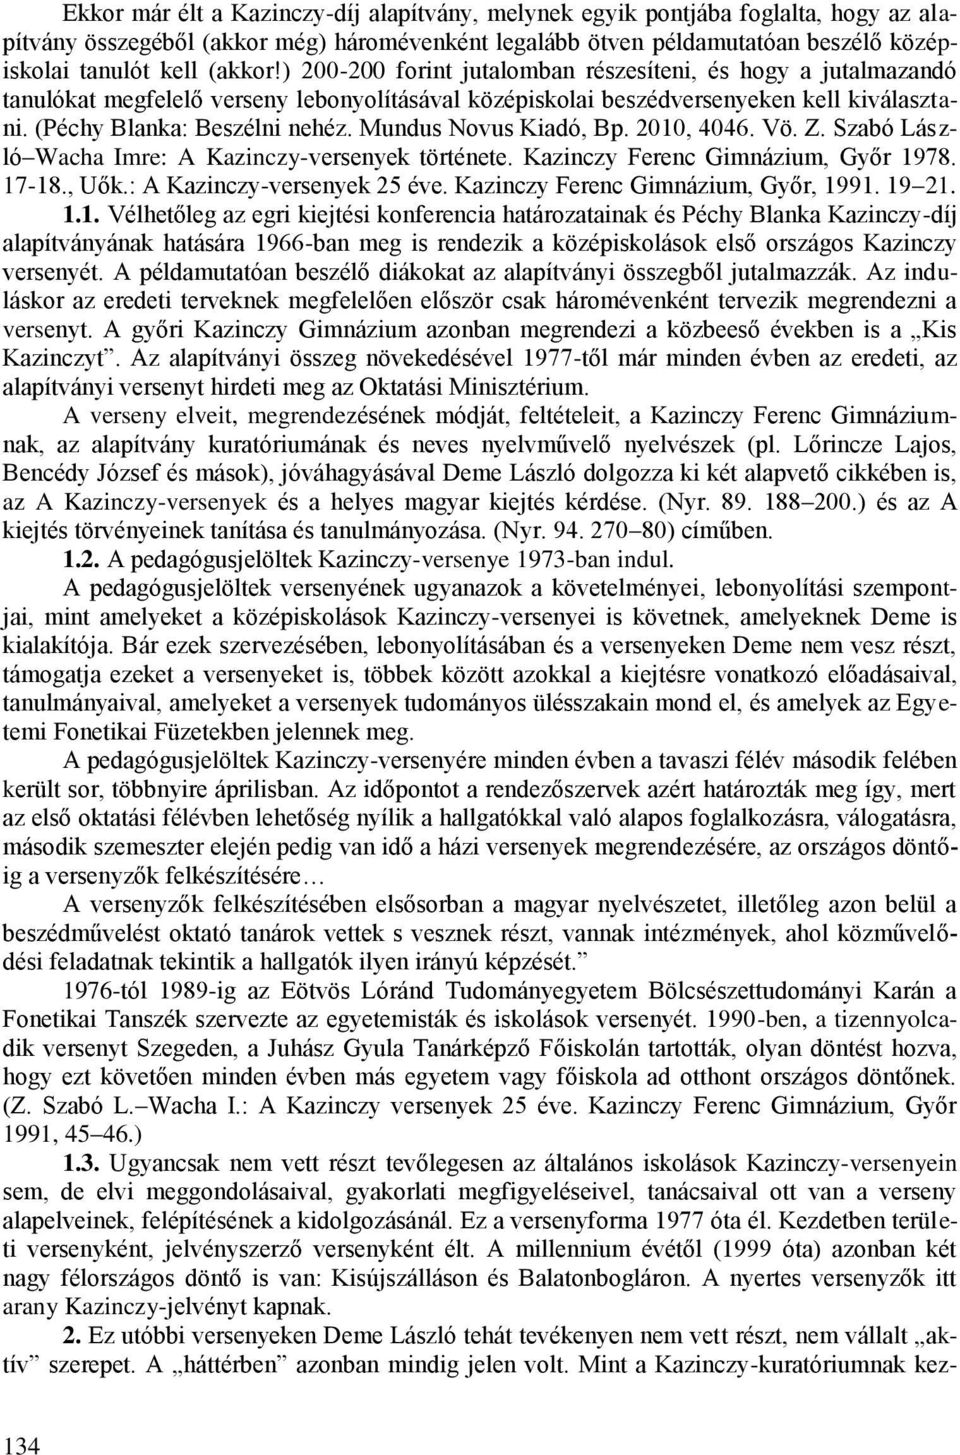 Mundus Novus Kiadó, Bp. 2010, 4046. Vö. Z. Szabó László Wacha Imre: A Kazinczy-versenyek története. Kazinczy Ferenc Gimnázium, Győr 1978. 17-18., Uők.: A Kazinczy-versenyek 25 éve.